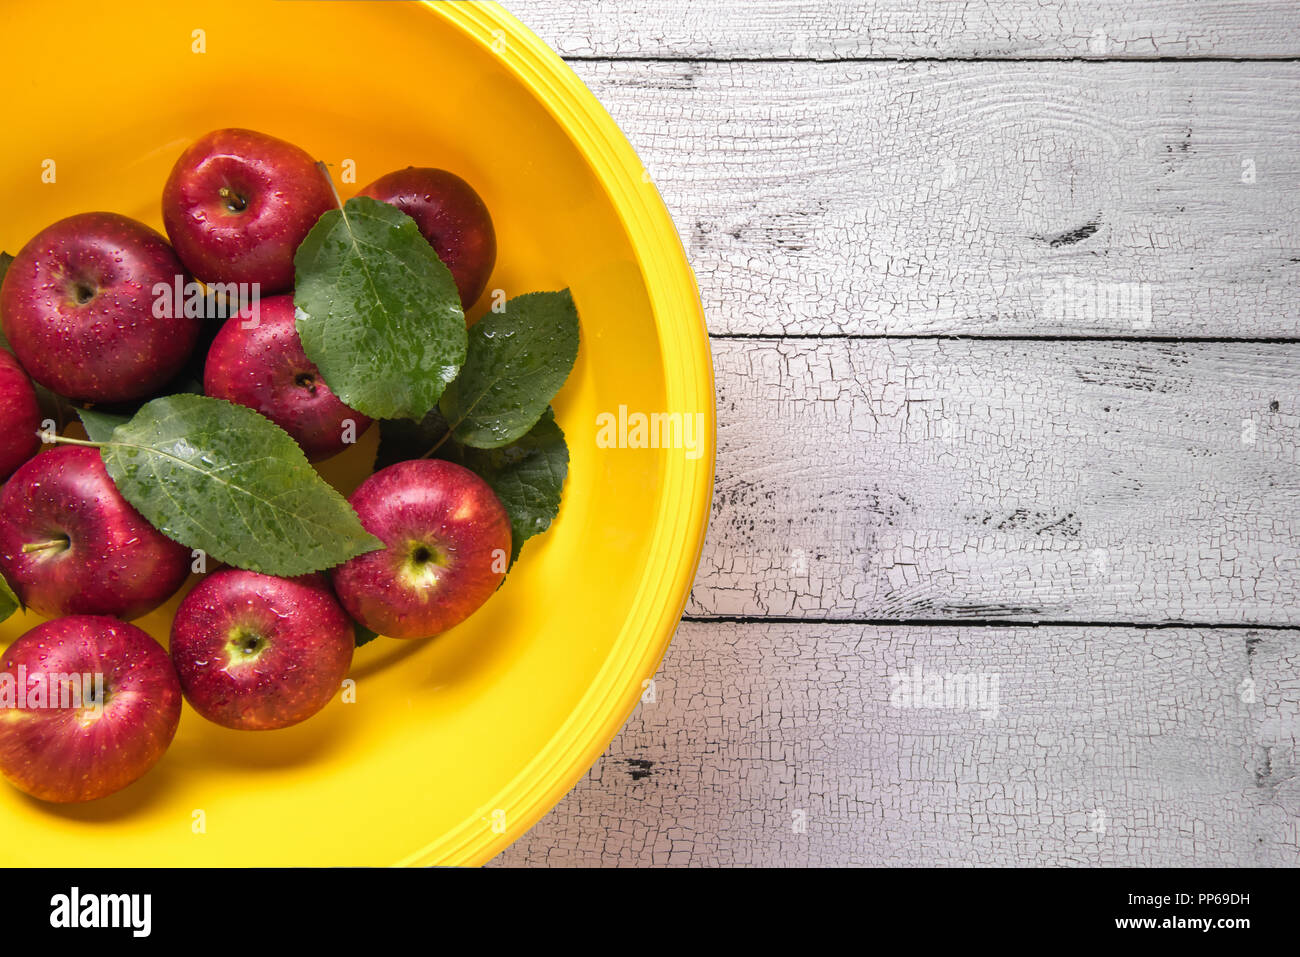 Nass reife rote Äpfel mit grünen Blättern in hellen runden gelben Kunststoff Waschbecken durch Wassertropfen bedeckt und auf weißen alten hölzernen Tisch gelegt. Selektive f Stockfoto